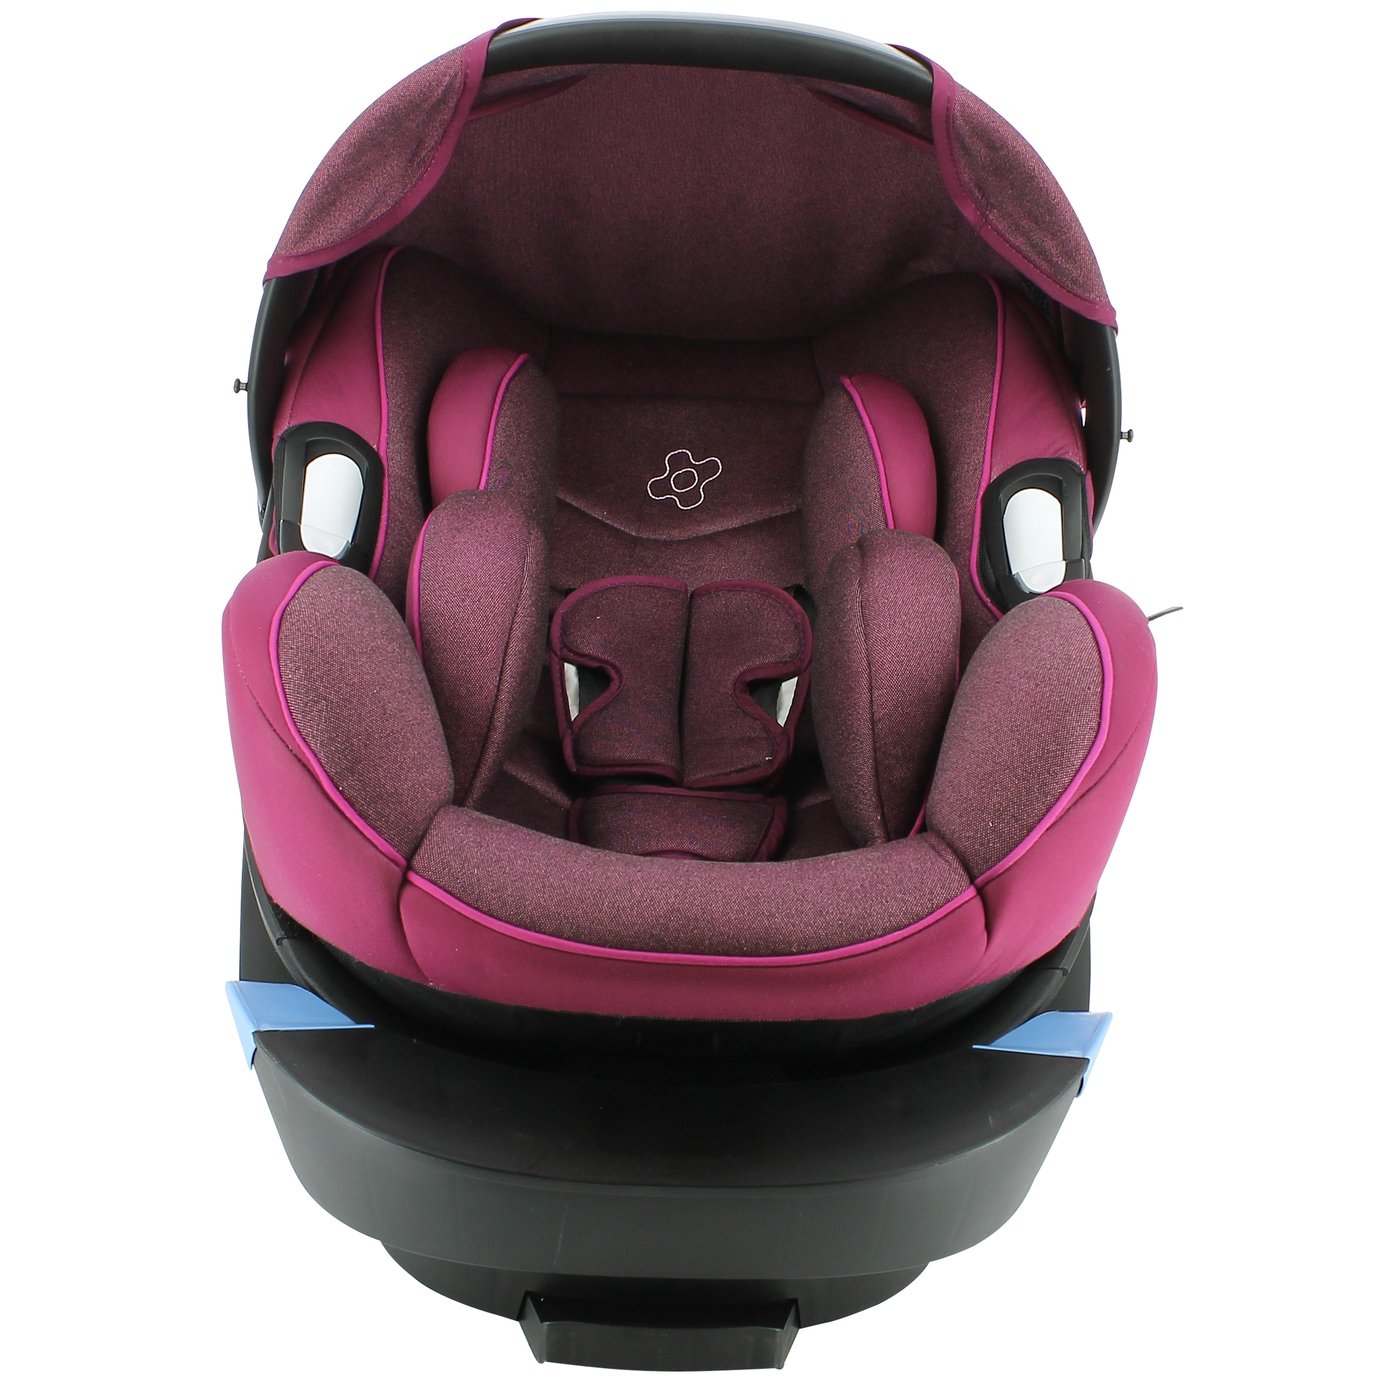 Migo Satellite Group 0+ ISOFIX Platimum Baby Car Seat Review